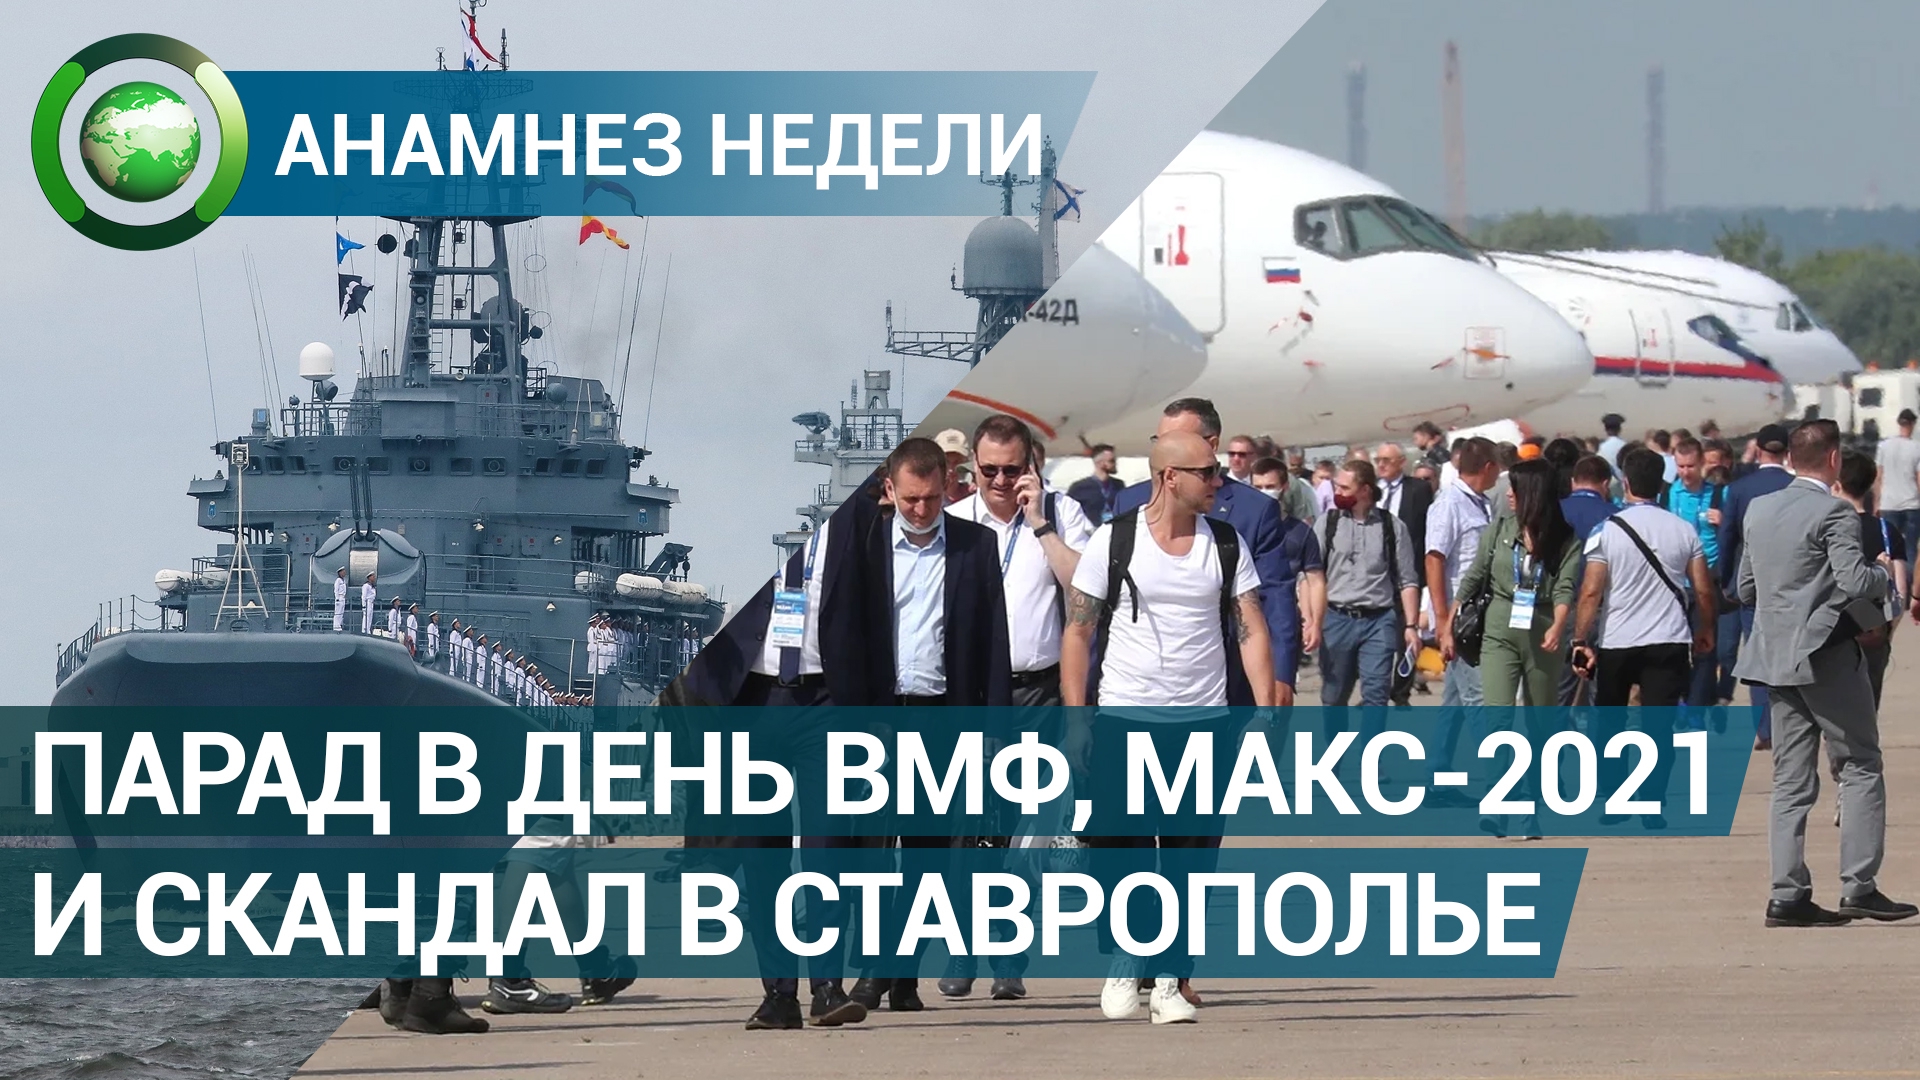 Анамнез недели: парад в День ВМФ, авиасалон МАКС-2021 и скандал в Ставропольском крае Видео